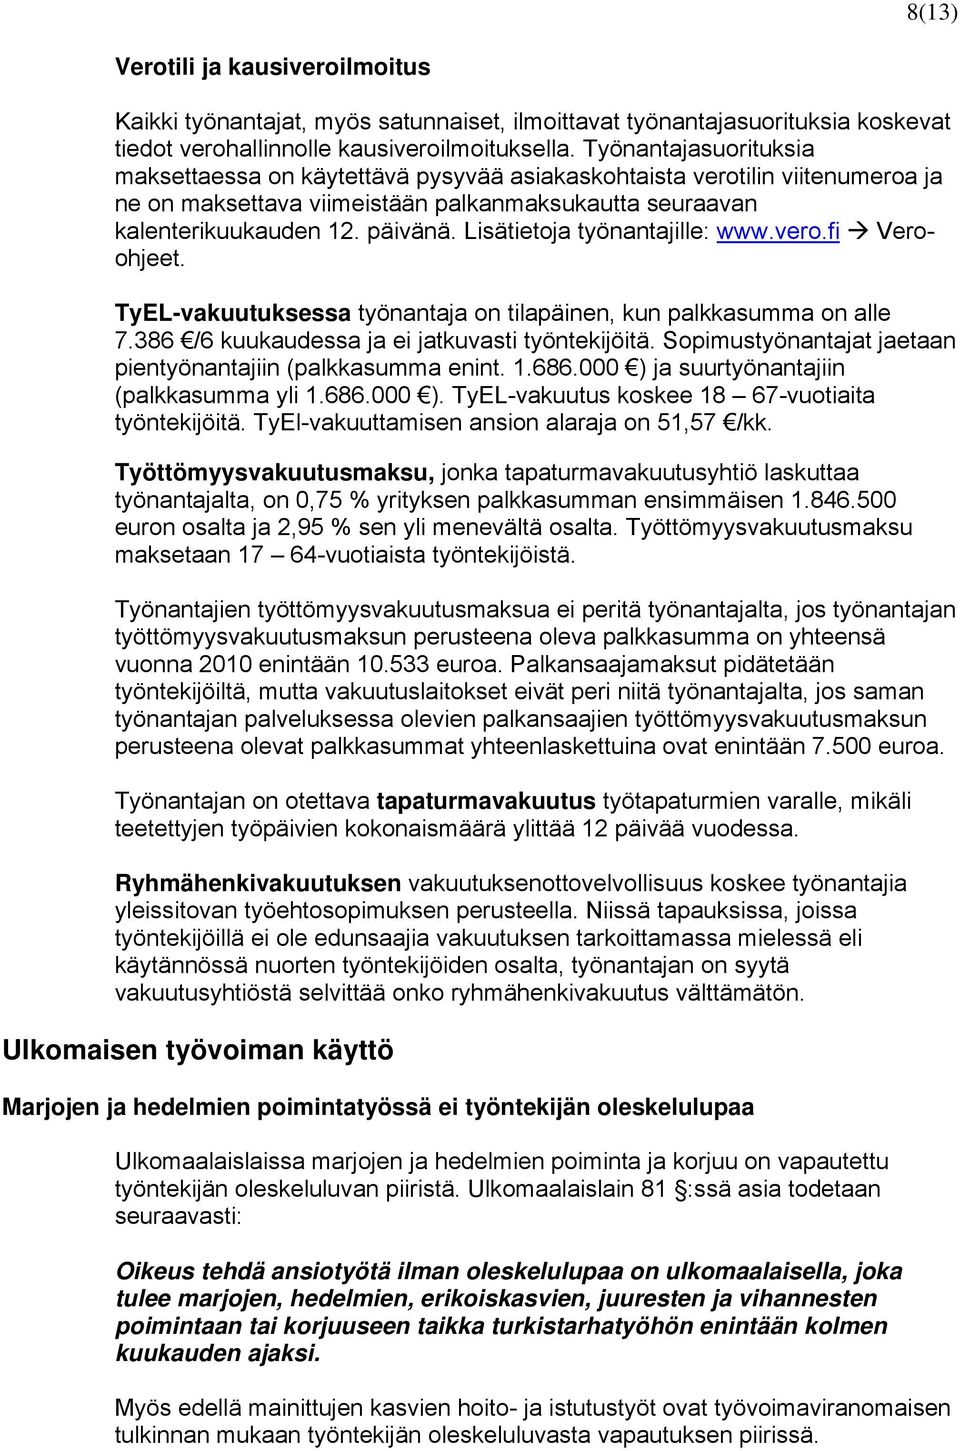 Lisätietoja työnantajille: www.vero.fi Veroohjeet. TyEL-vakuutuksessa työnantaja on tilapäinen, kun palkkasumma on alle 7.386 /6 kuukaudessa ja ei jatkuvasti työntekijöitä.